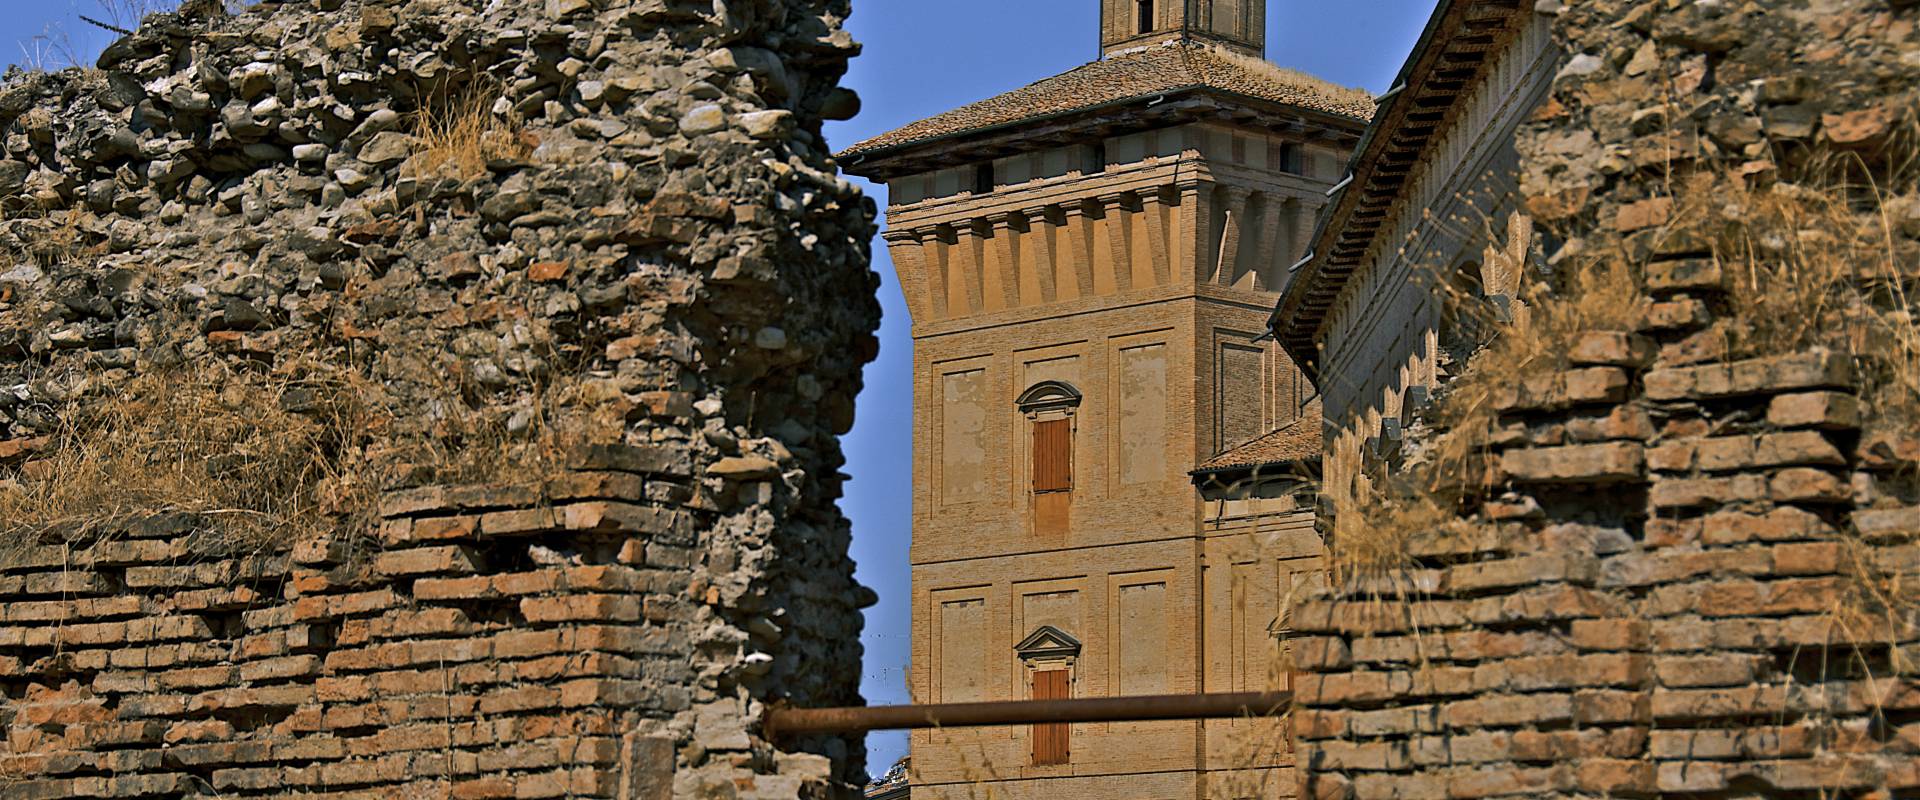 La torre della Rocca foto di Caba2011